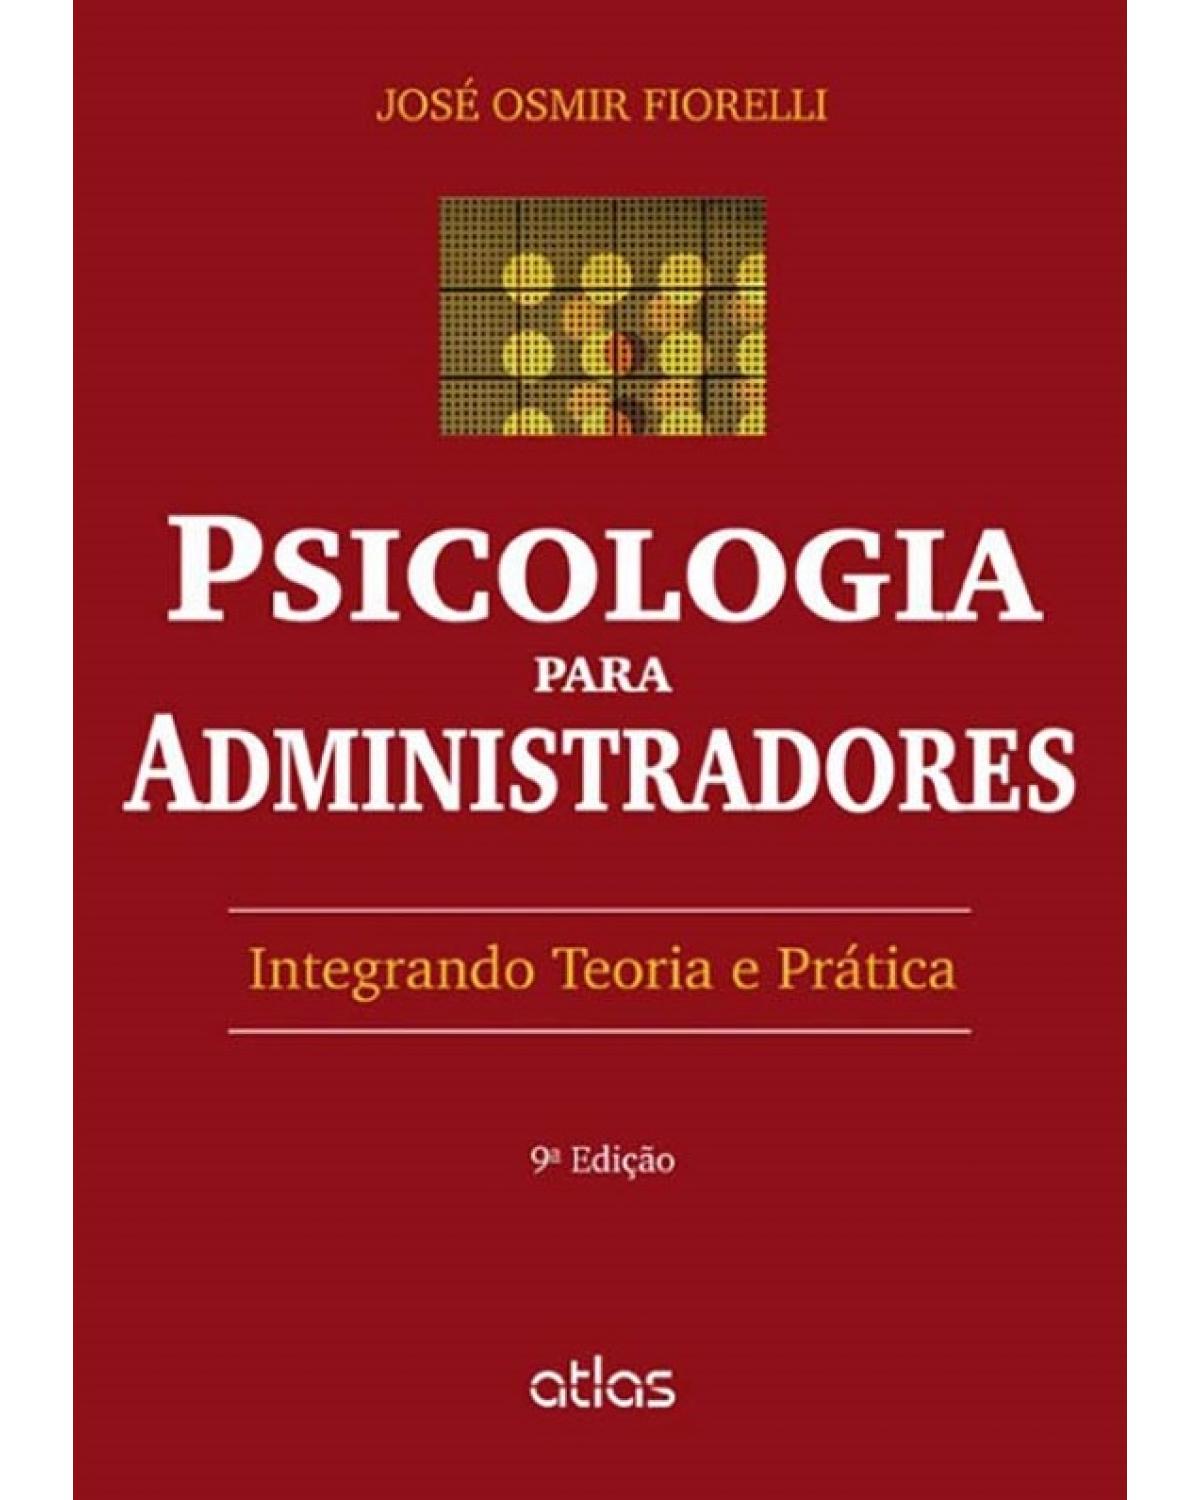 Psicologia para administradores: Integrando teoria e prática - 9ª Edição | 2014